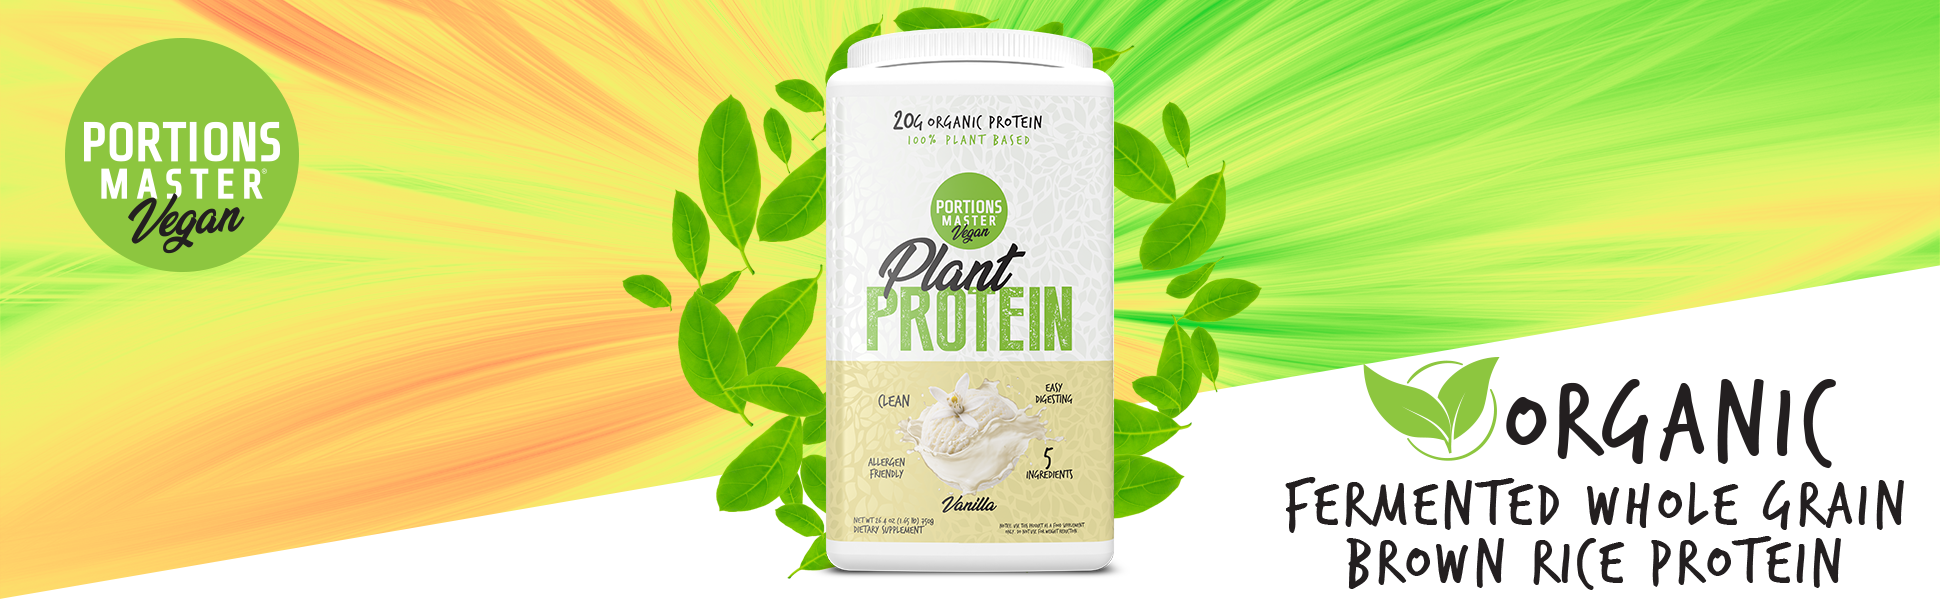 Vanilla Plant Protein Banner